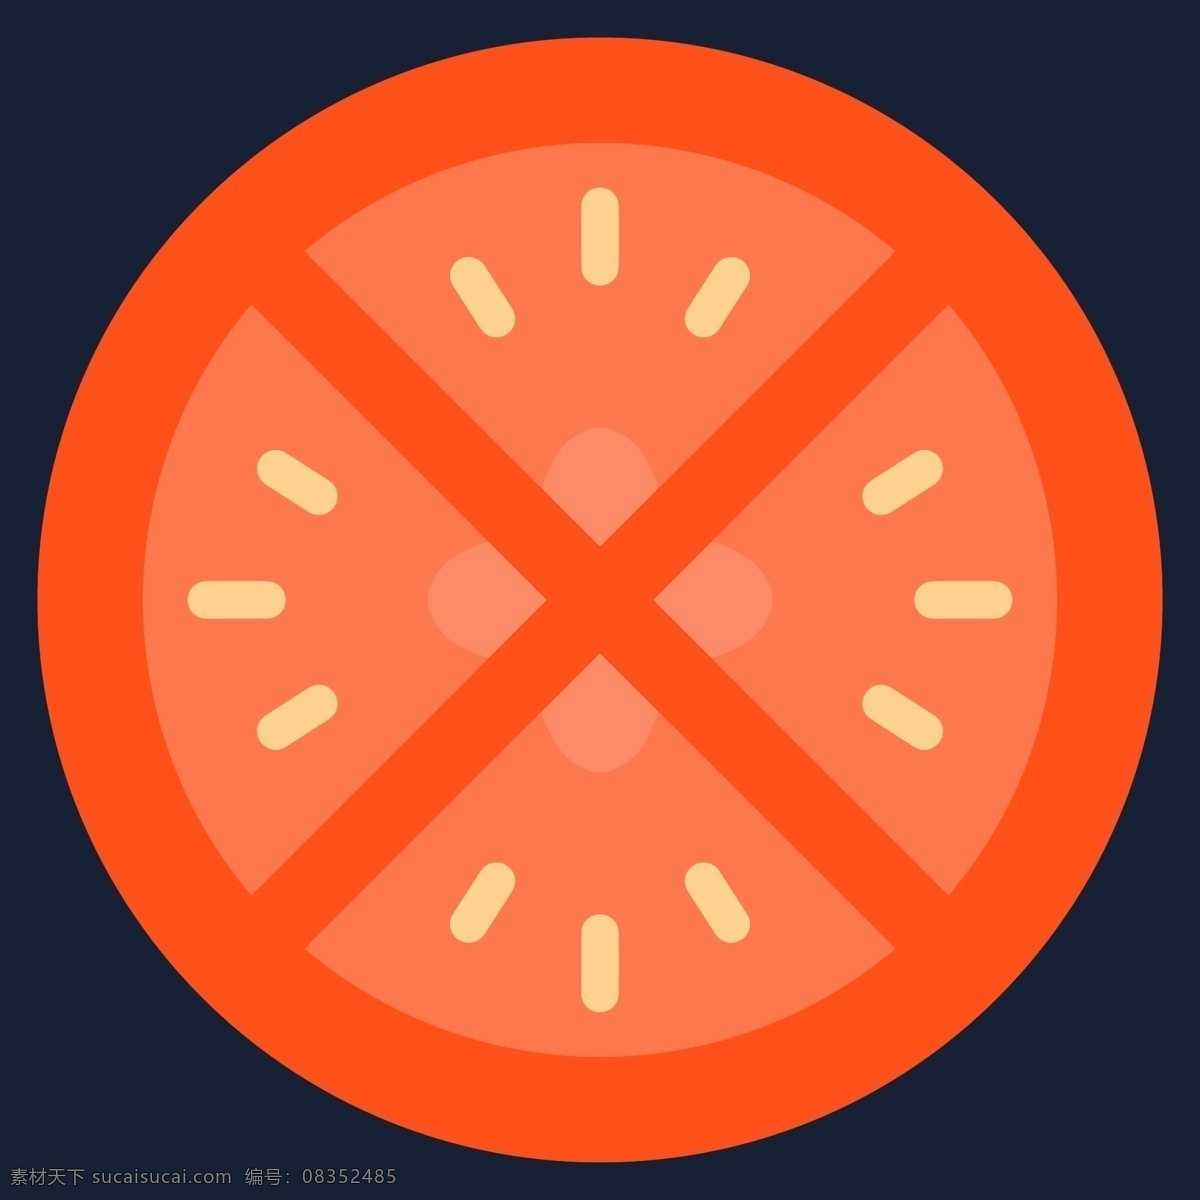 创意 披萨 食物 图标 网页图标 矢量图标 蔬菜 icon 线性图标 简约图标 食物图标 香肠 鸡腿